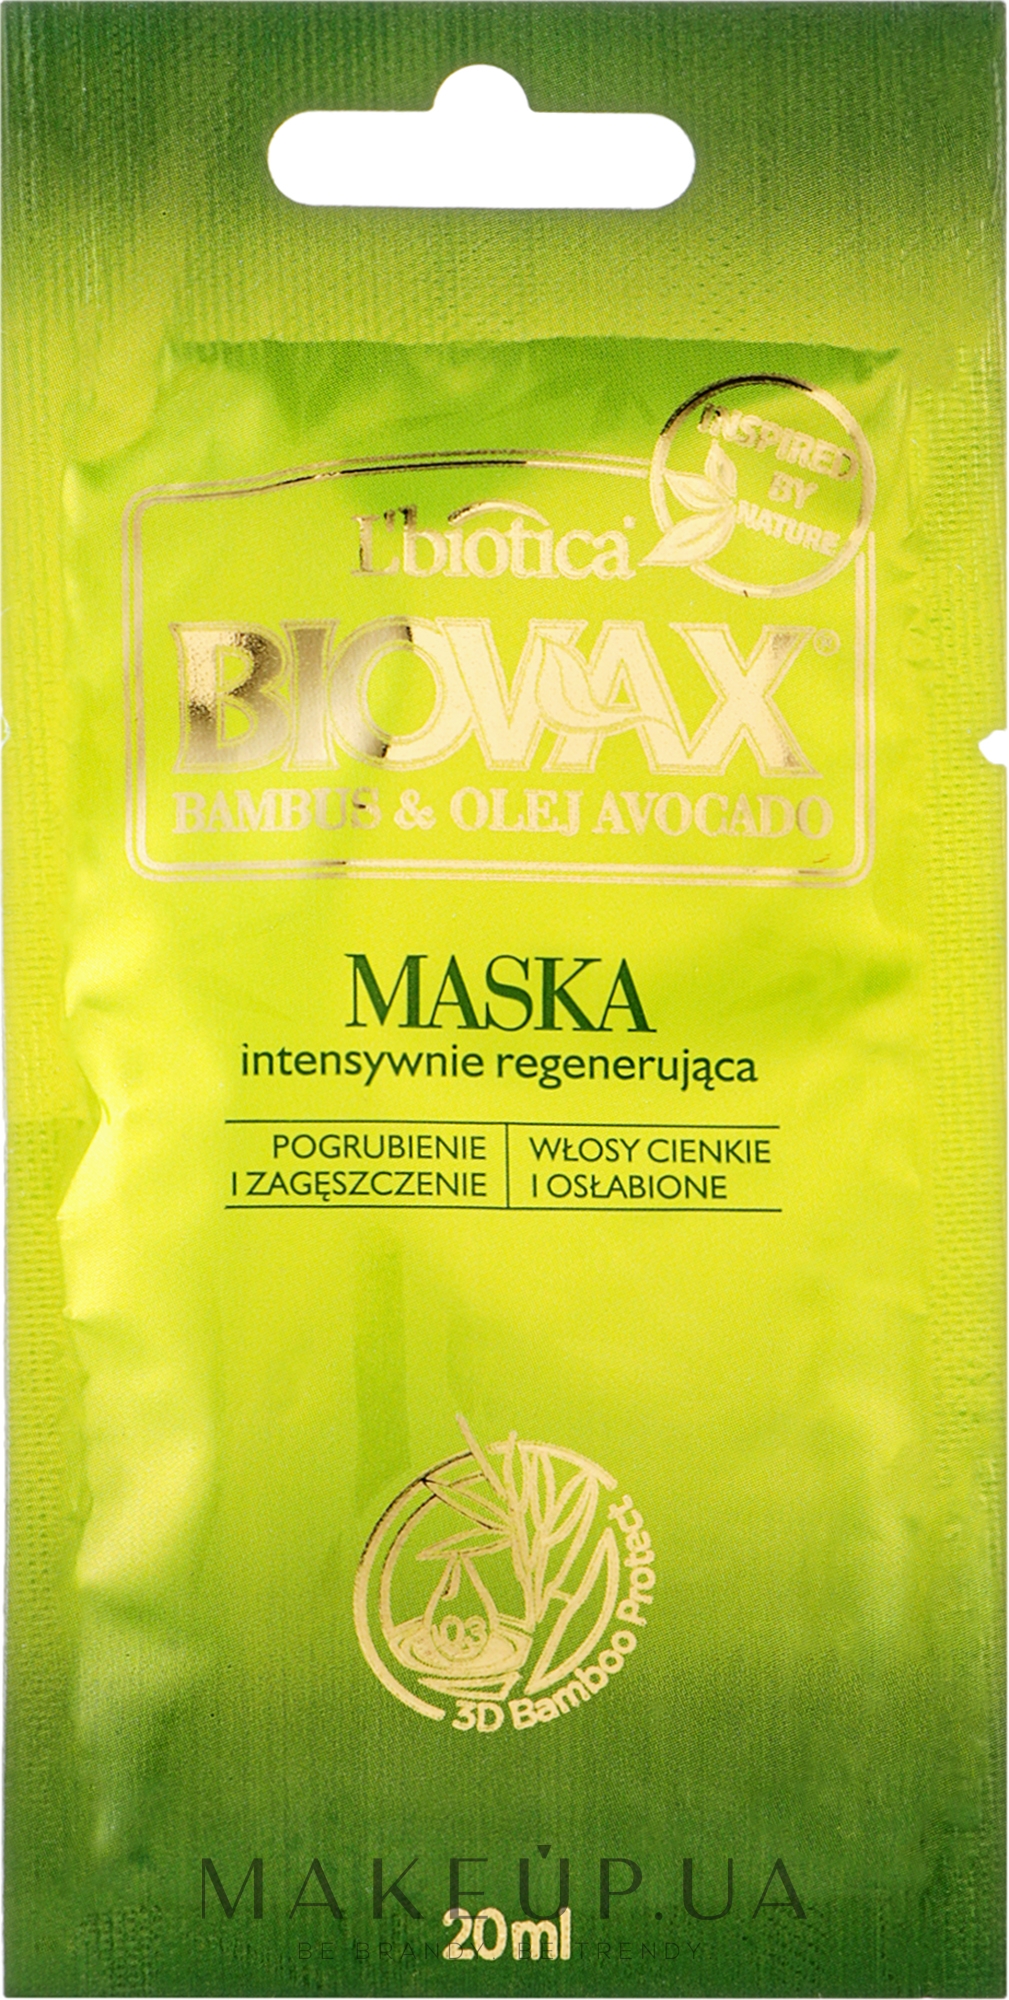 Маска для волос "Бамбук и авокадо" - Biovax Hair Mask Travel Size — фото 20ml